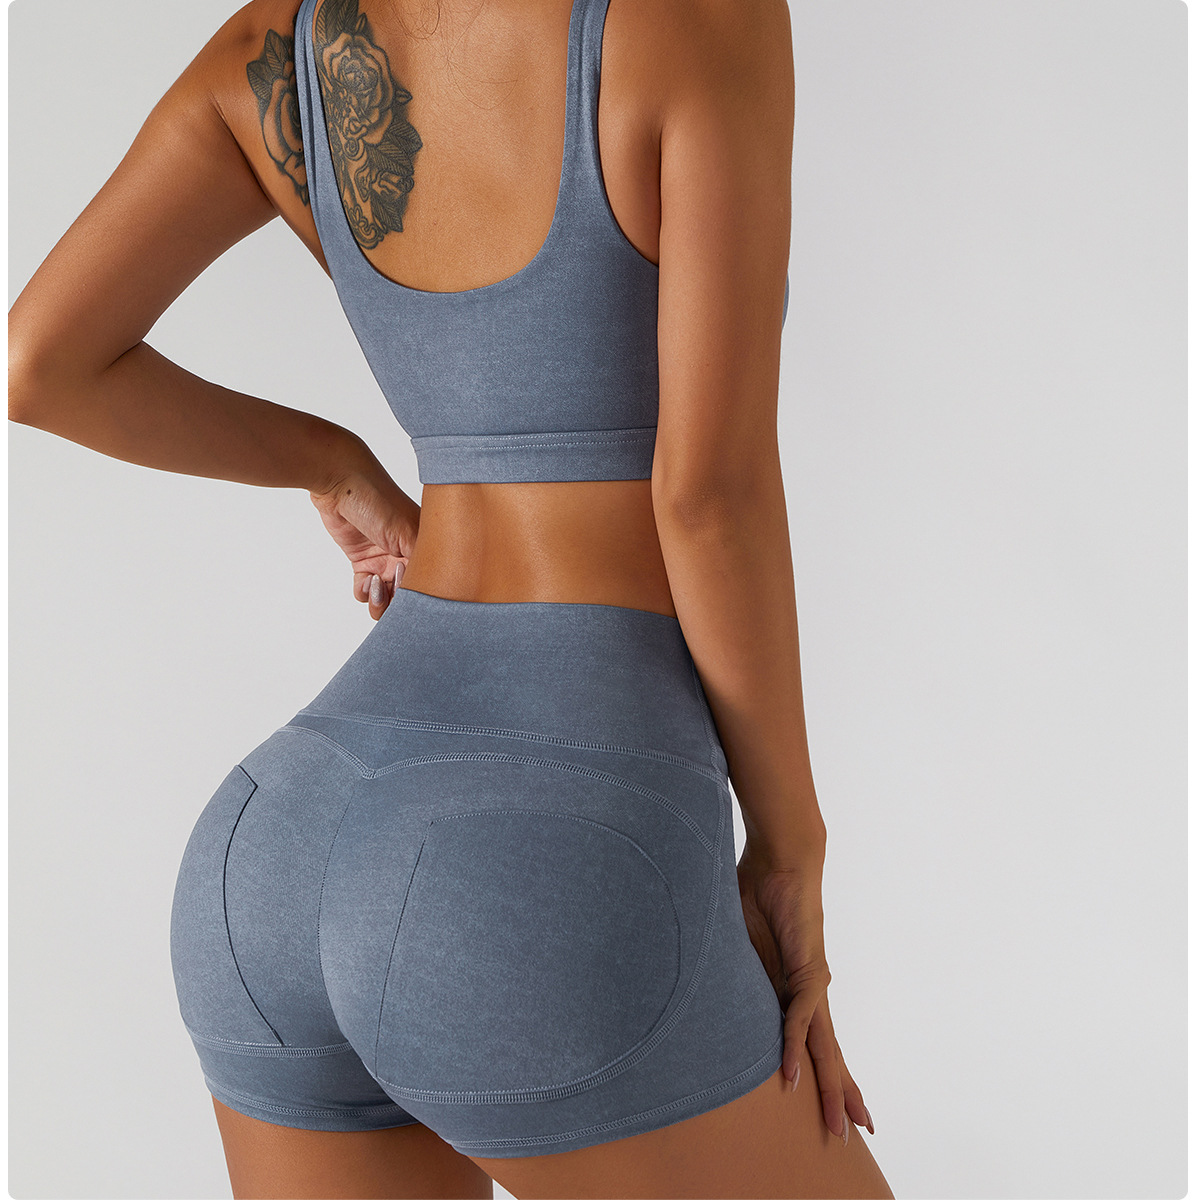 Women's Sporty Underwear Beautiful Back Fitness Yoga Breast